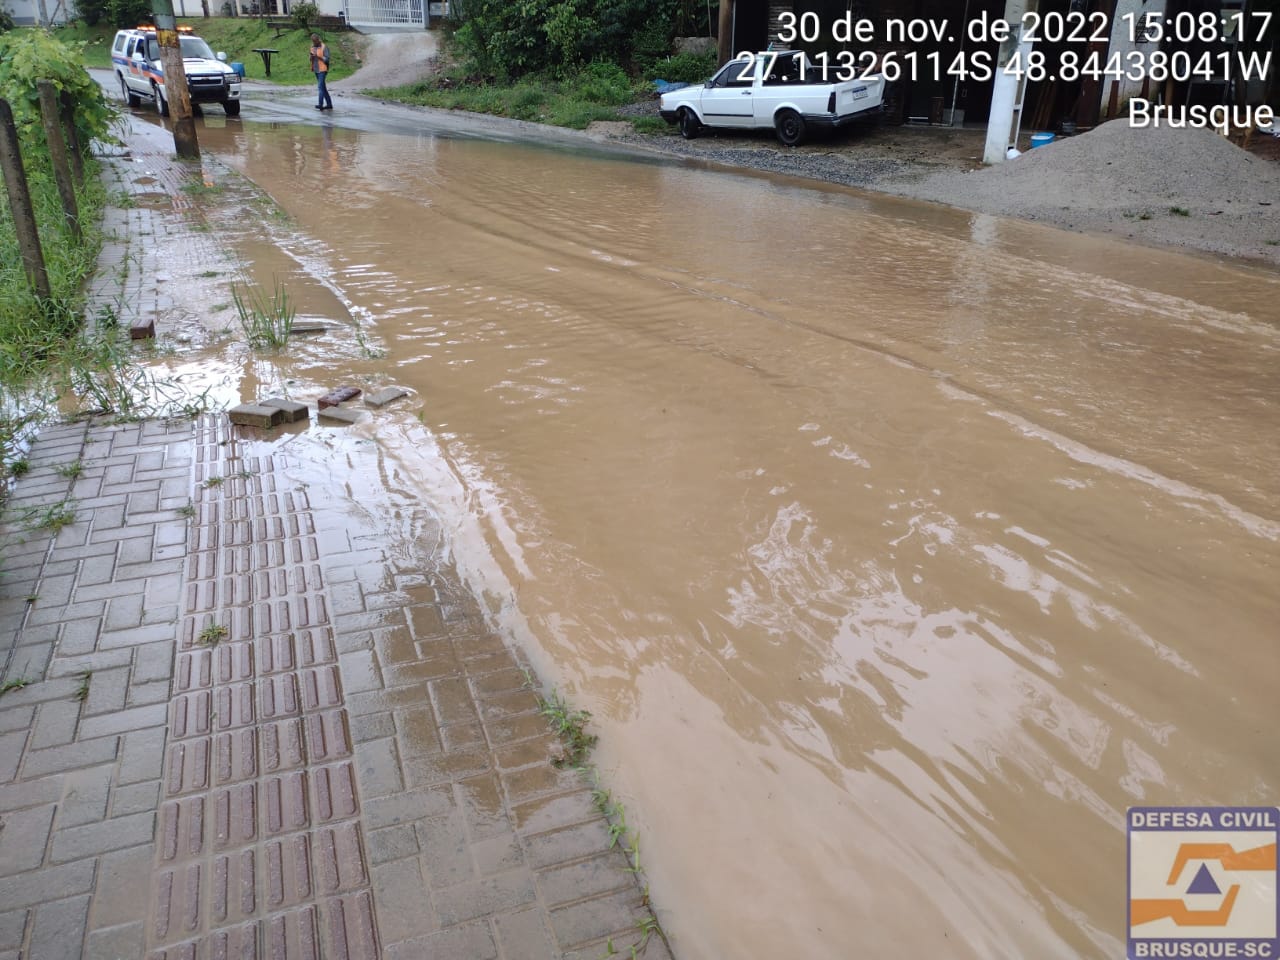 Defesa Civil atualiza boletim das chuvas em Brusque